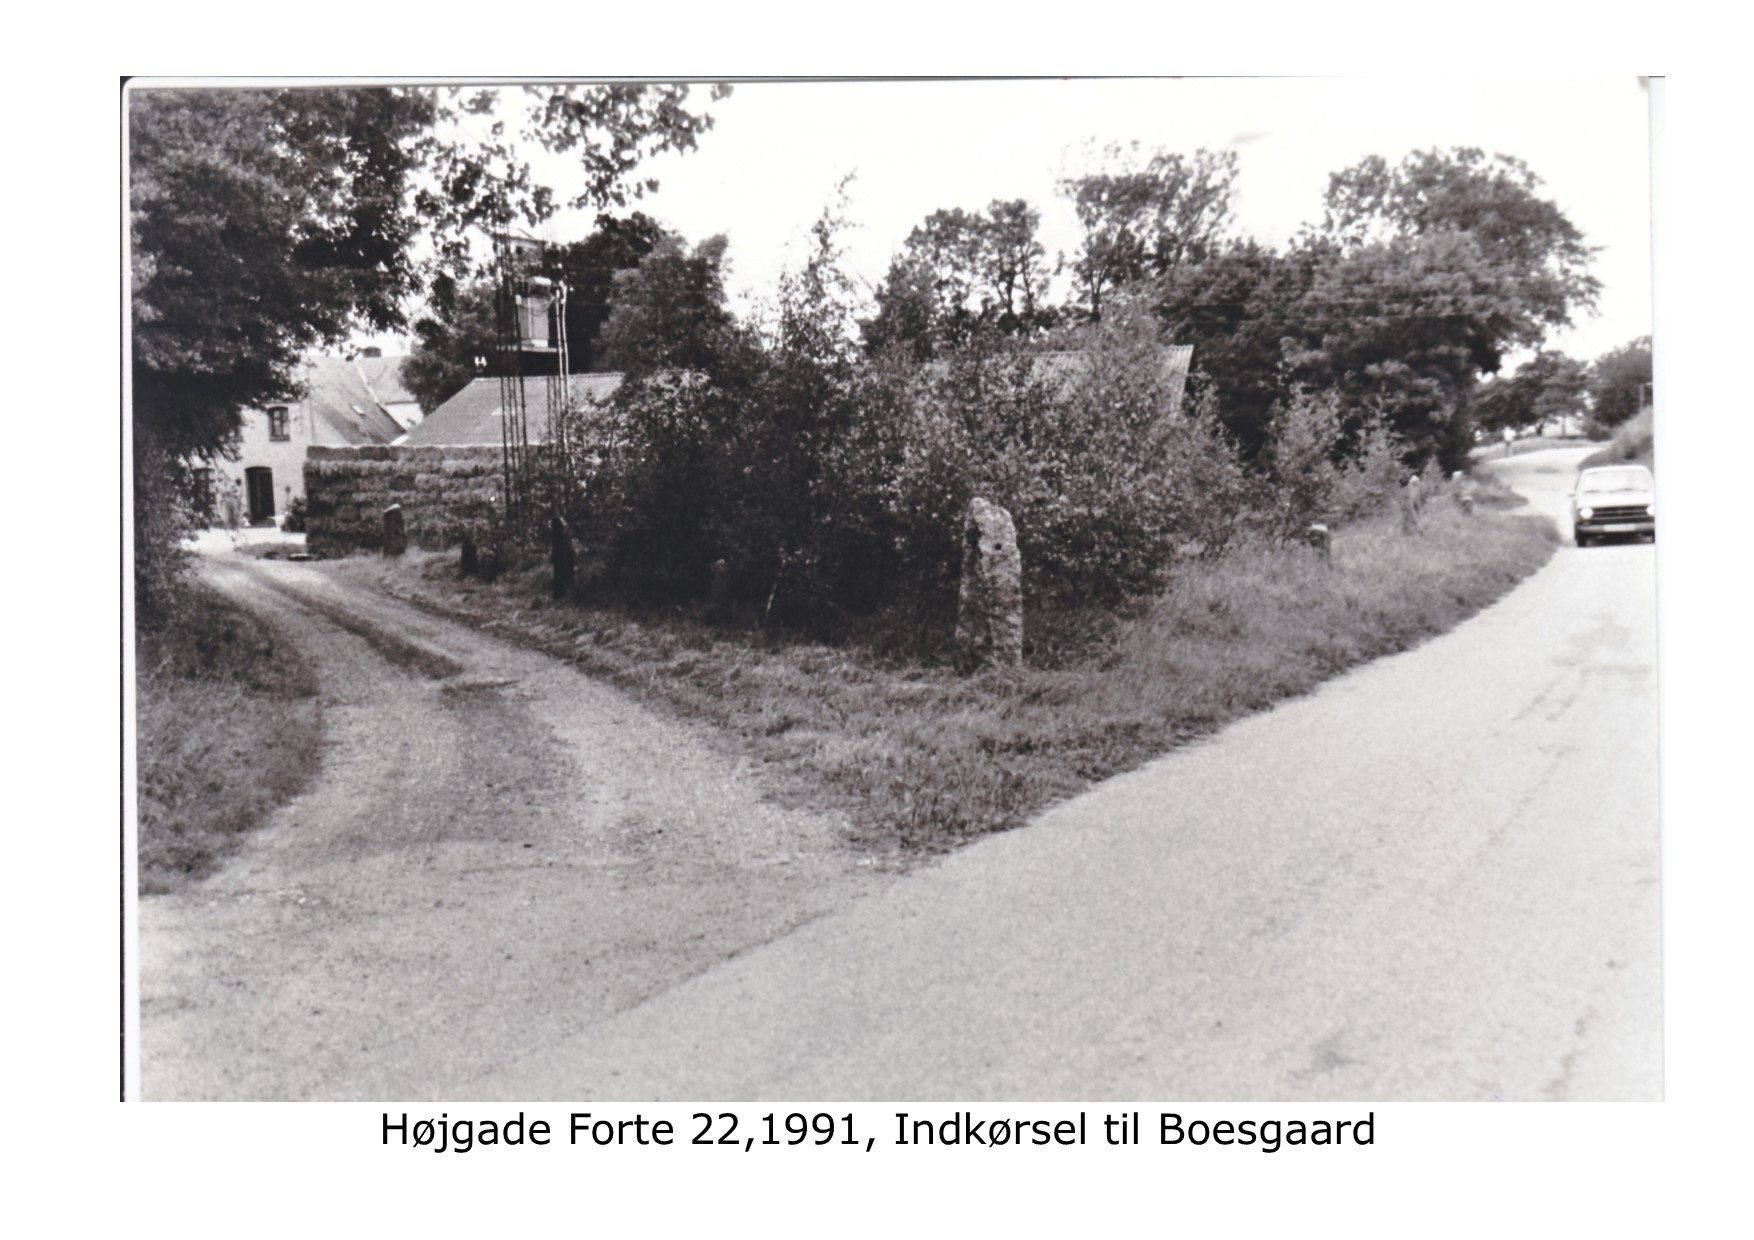 Indkørsel til Boesgård Højgade Forte 22 1991